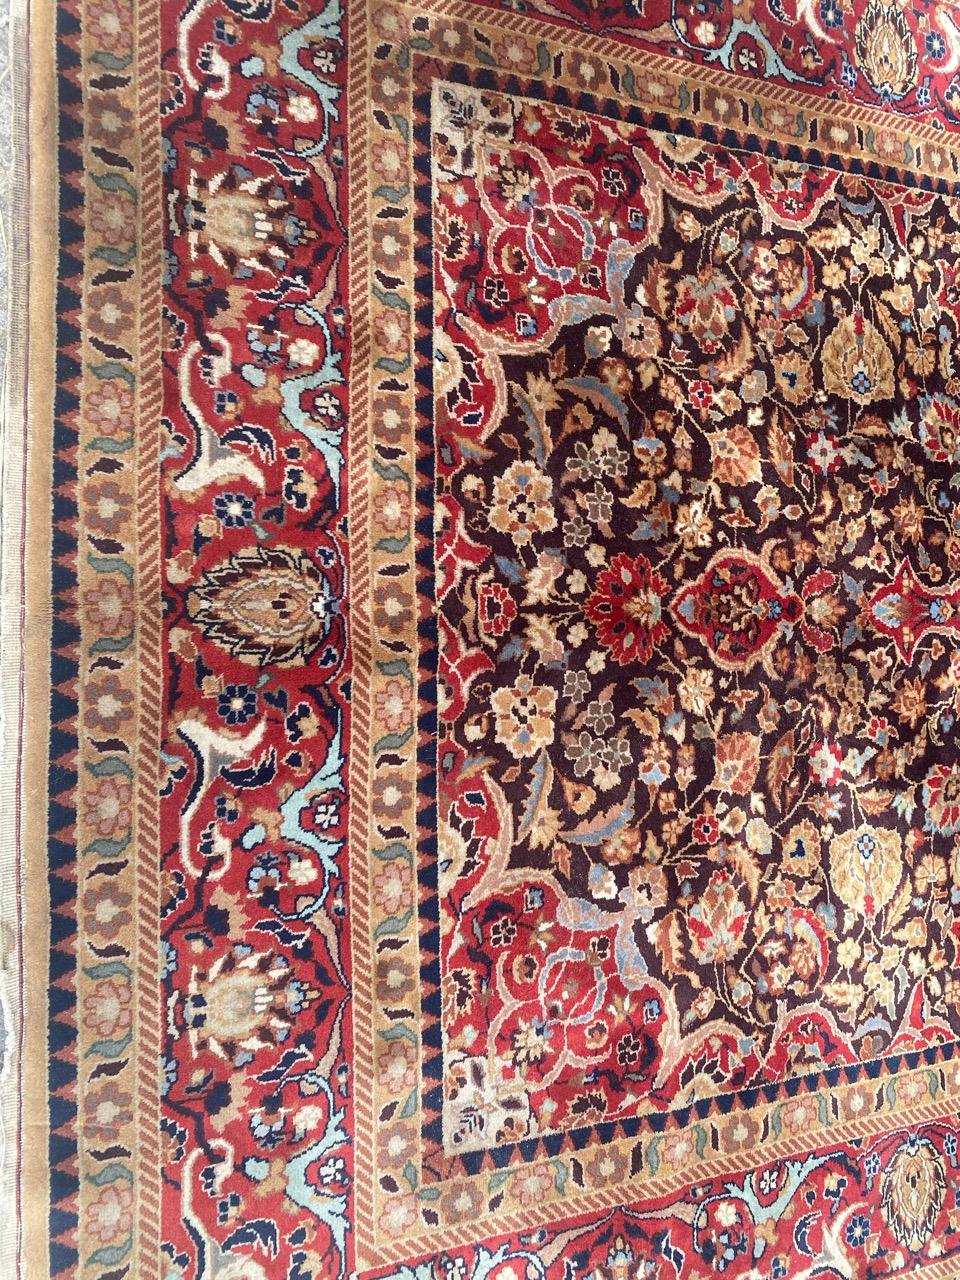 Hübscher transsilvanischer Teppich mit schönem floralem persischem Muster und schönen Farben, komplett handgeknüpft mit Wollsamt auf Baumwollgrund.